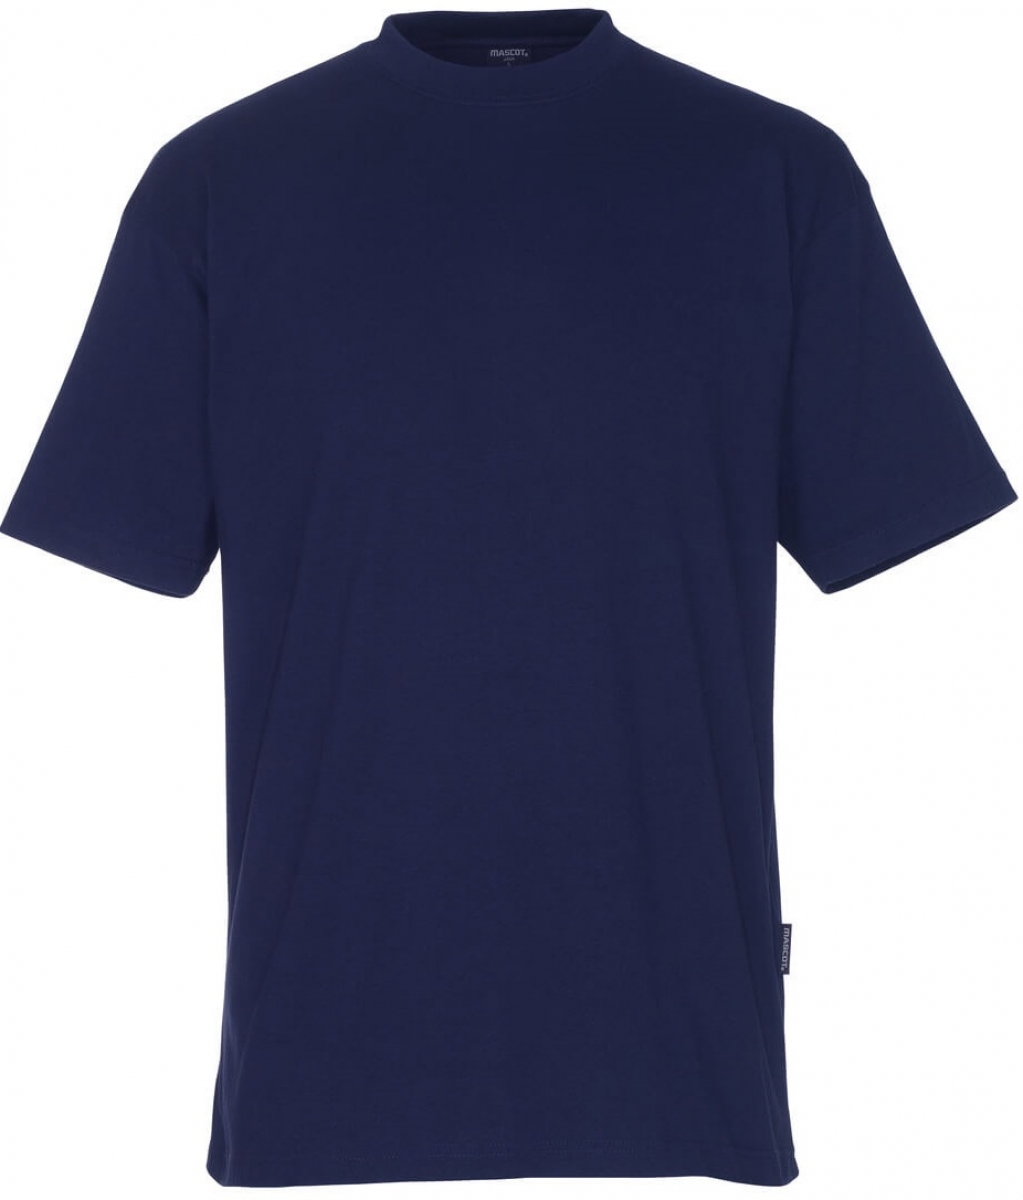 MASCOT-Worker-Shirts, T-Shirt, Java, 195 g/m, marine